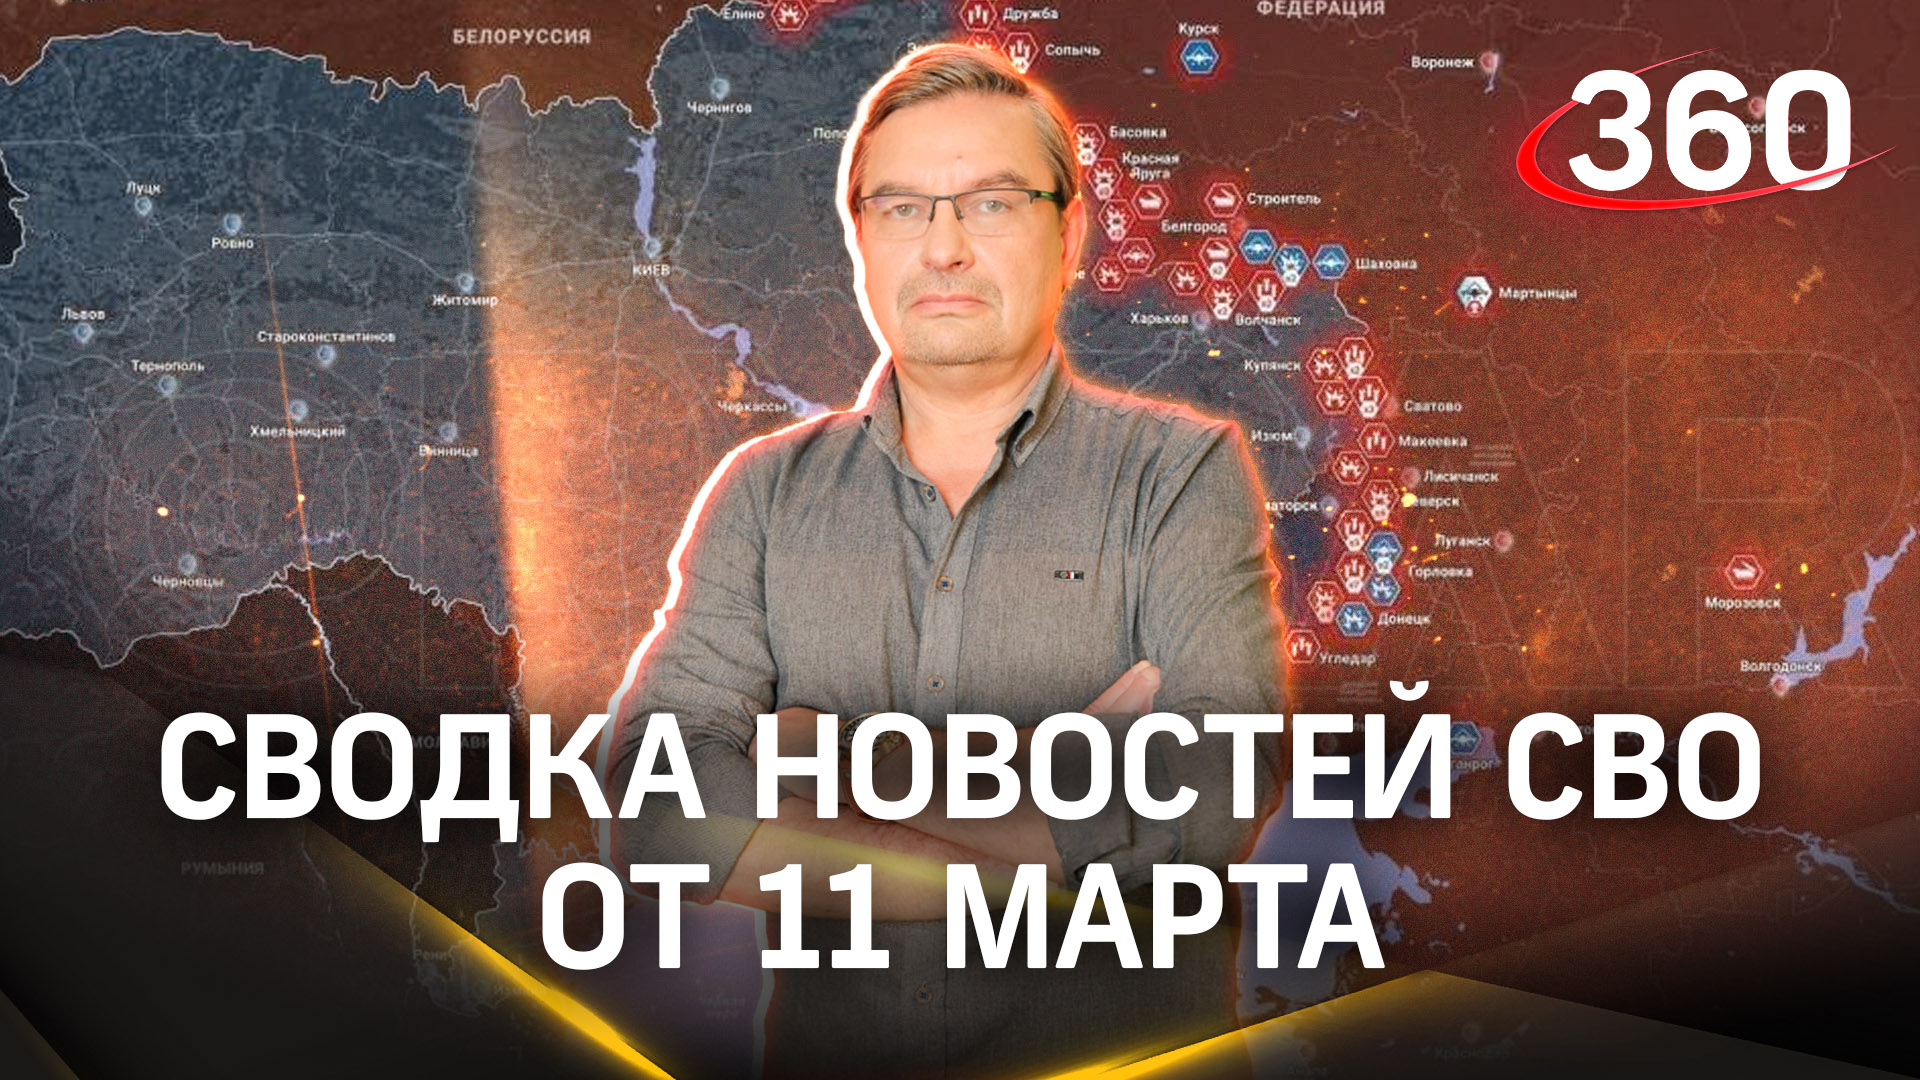 Михаил Онуфриенко: «Сырскому нужно показать стабильность хотя бы линии фронта»